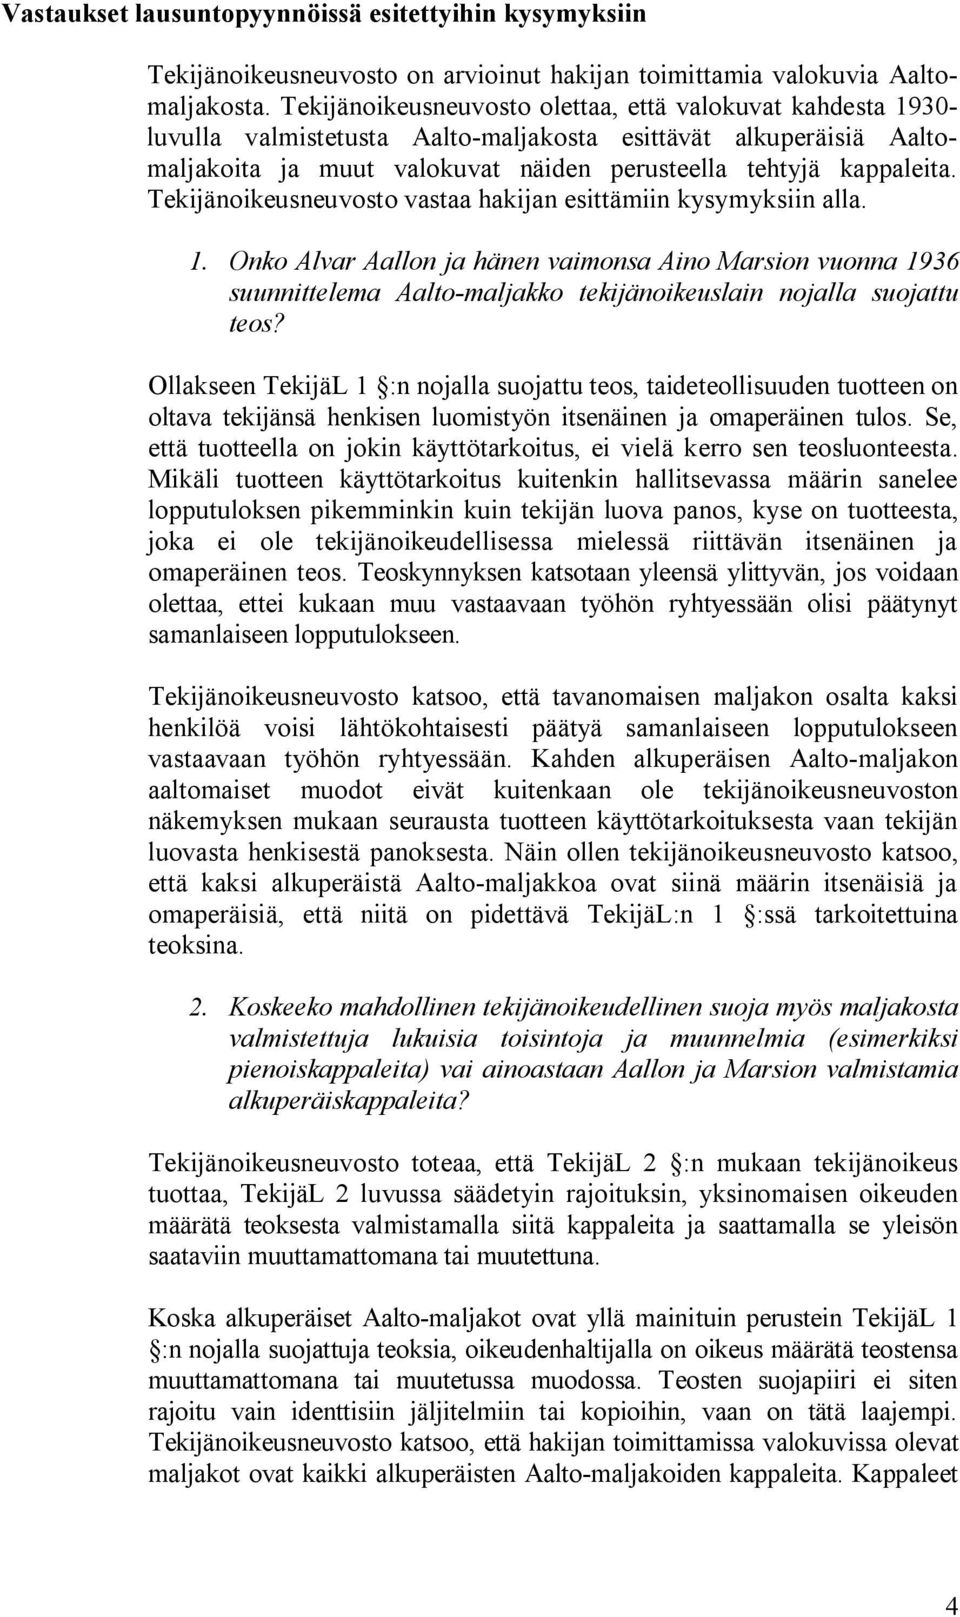 Tekijänoikeusneuvosto vastaa hakijan esittämiin kysymyksiin alla. 1. Onko Alvar Aallon ja hänen vaimonsa Aino Marsion vuonna 1936 suunnittelema Aalto-maljakko tekijänoikeuslain nojalla suojattu teos?